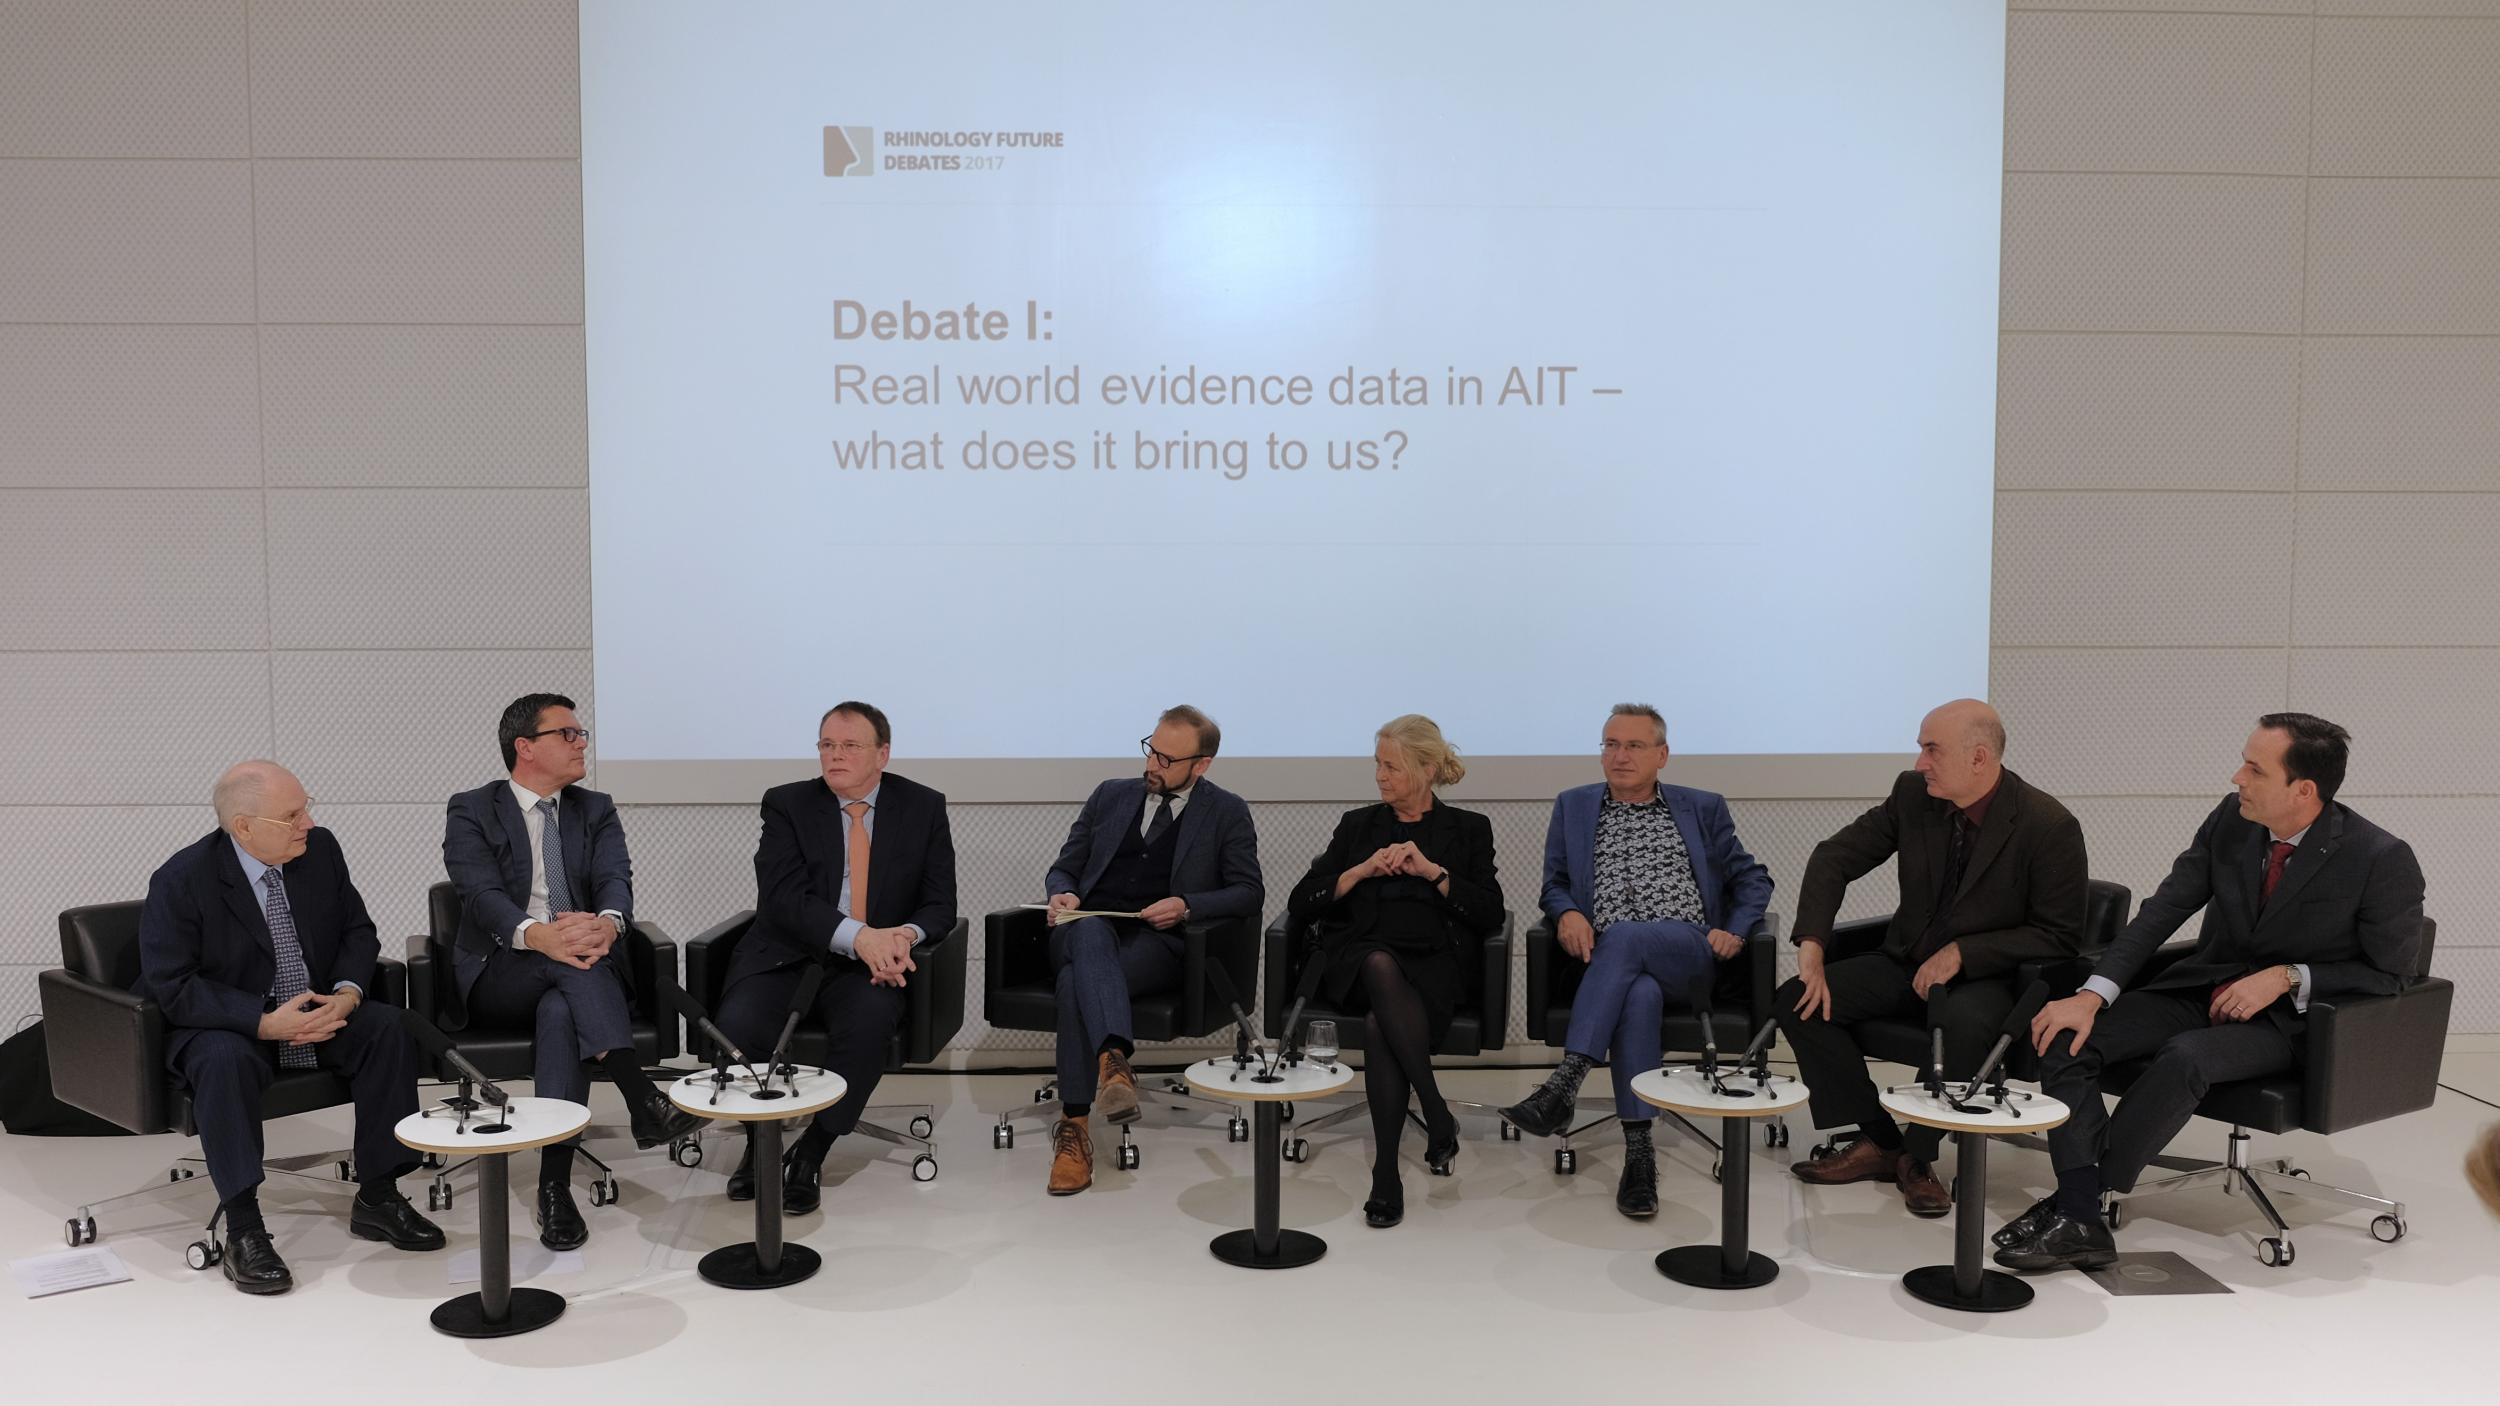 Rhinology Future Debates 2018